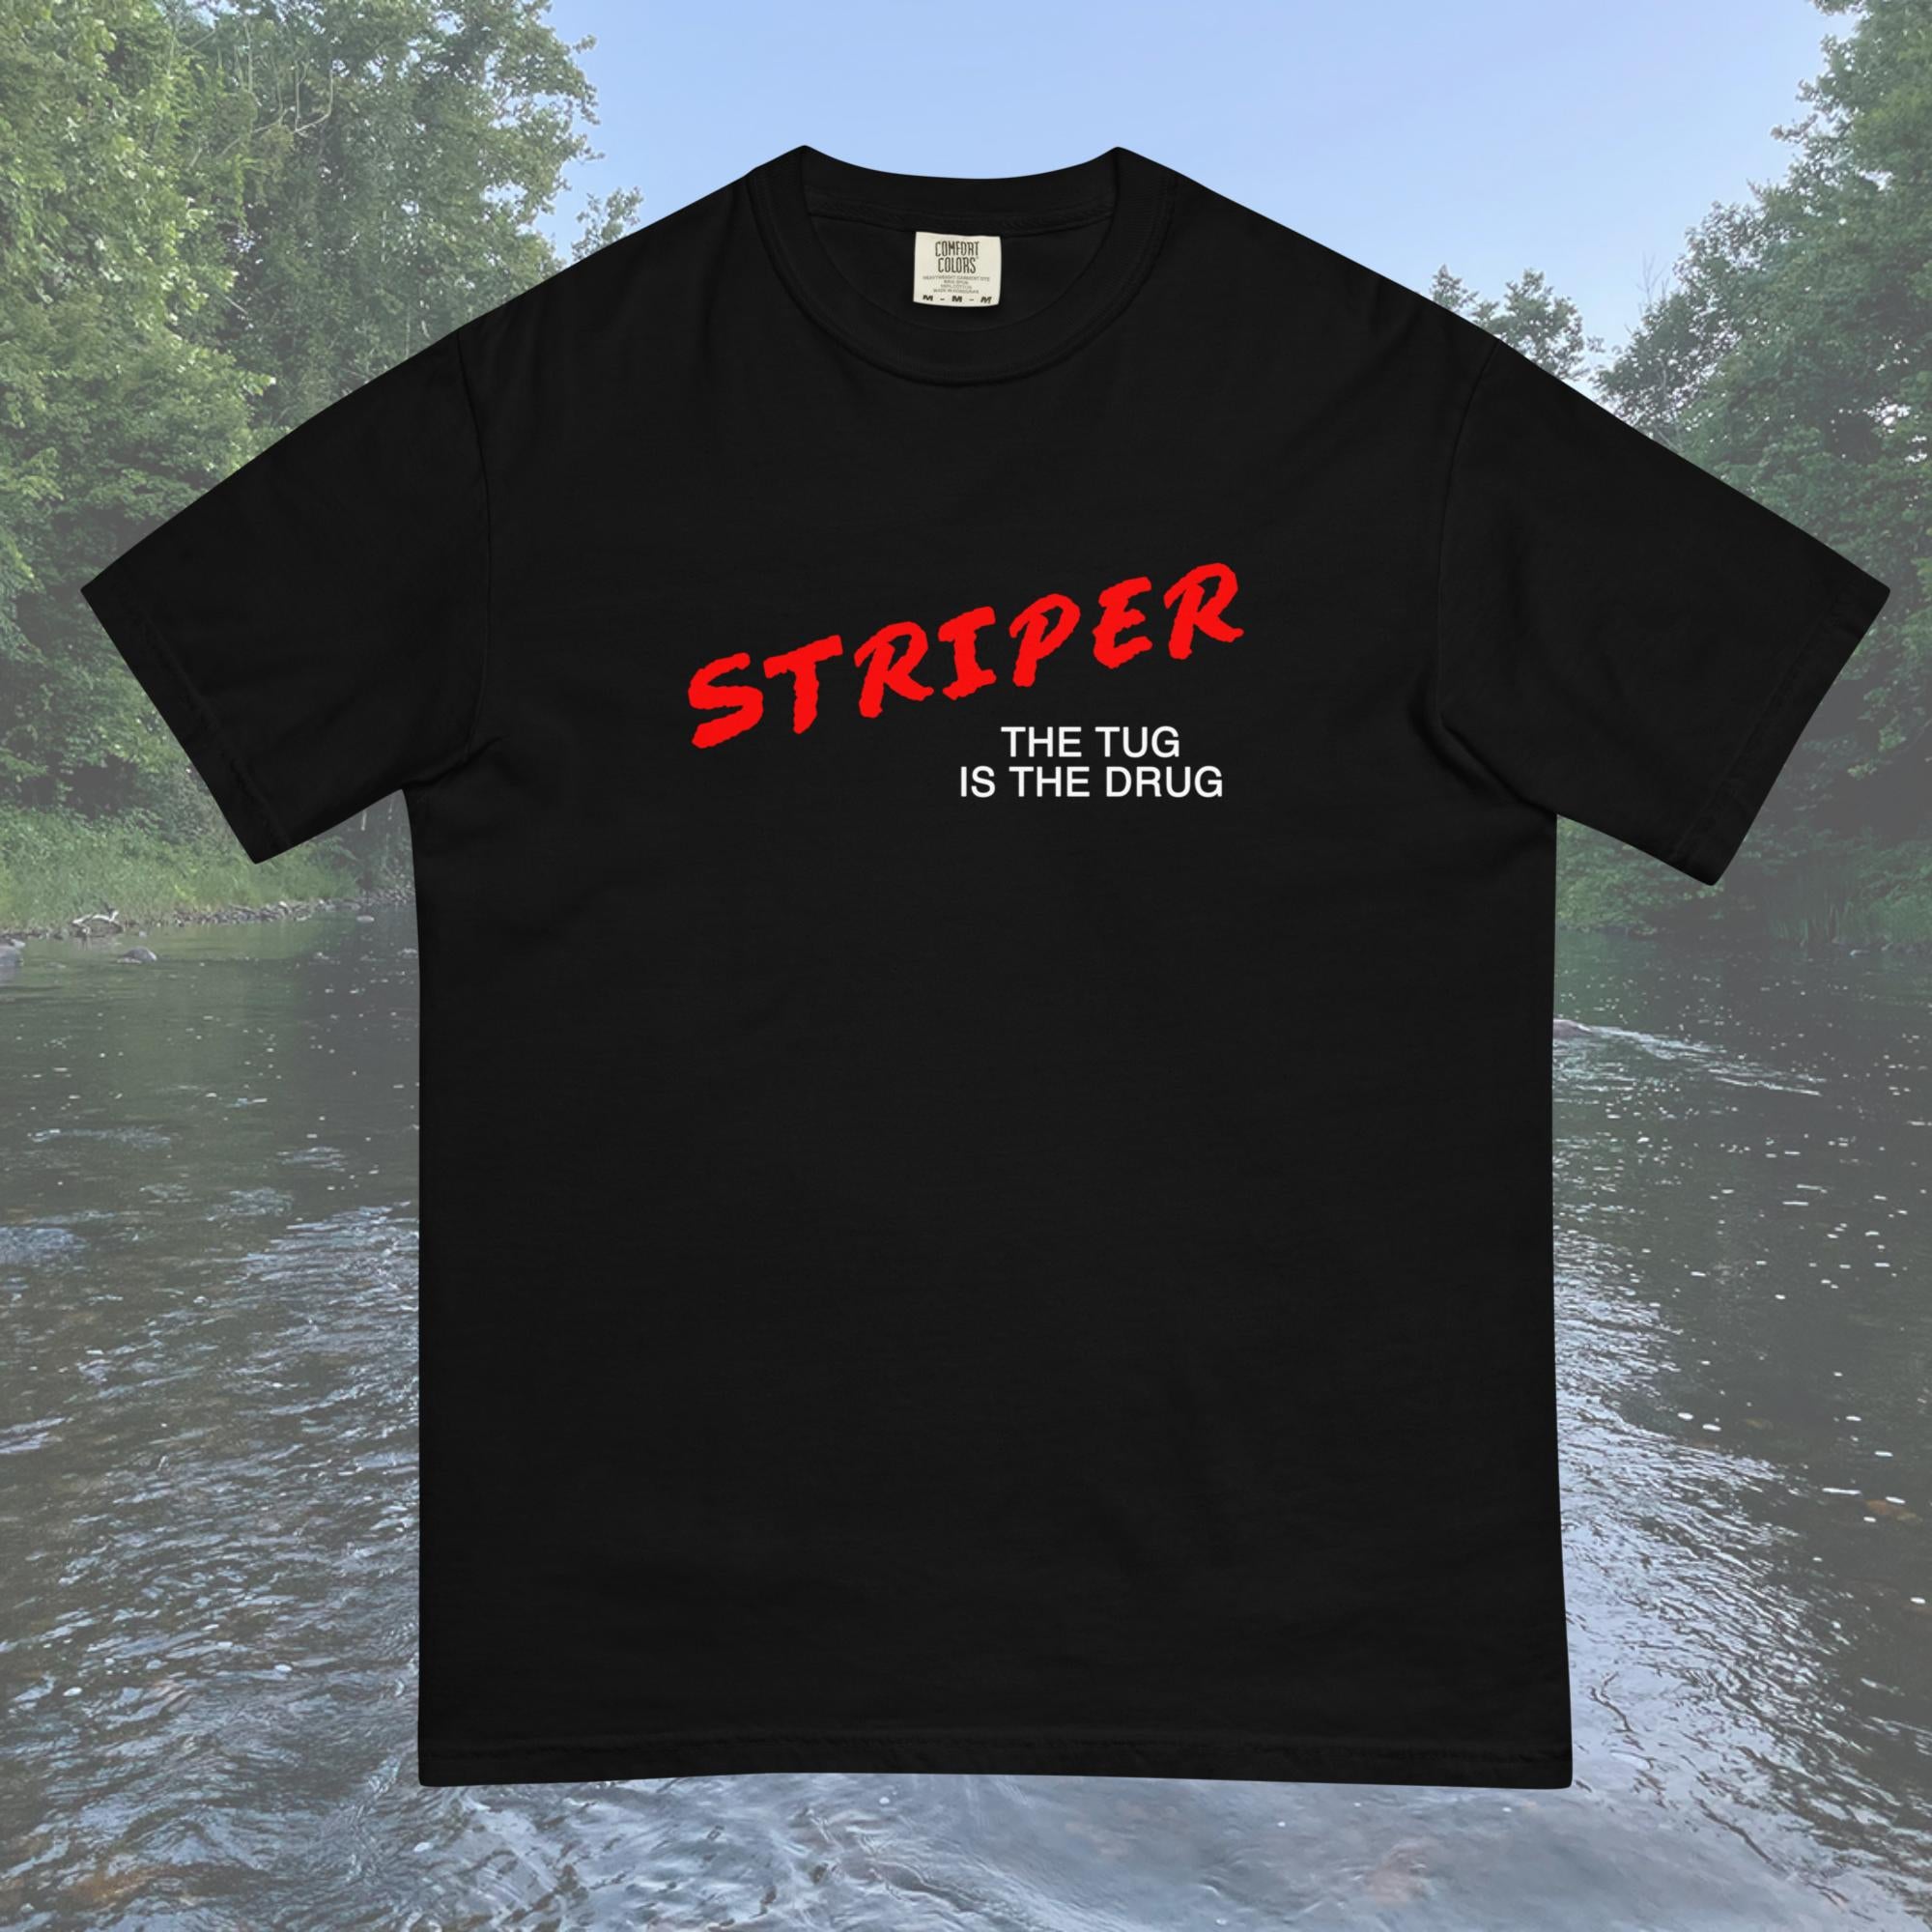 Striper D.A.R.E. T-Shirt - Comfort Colors S